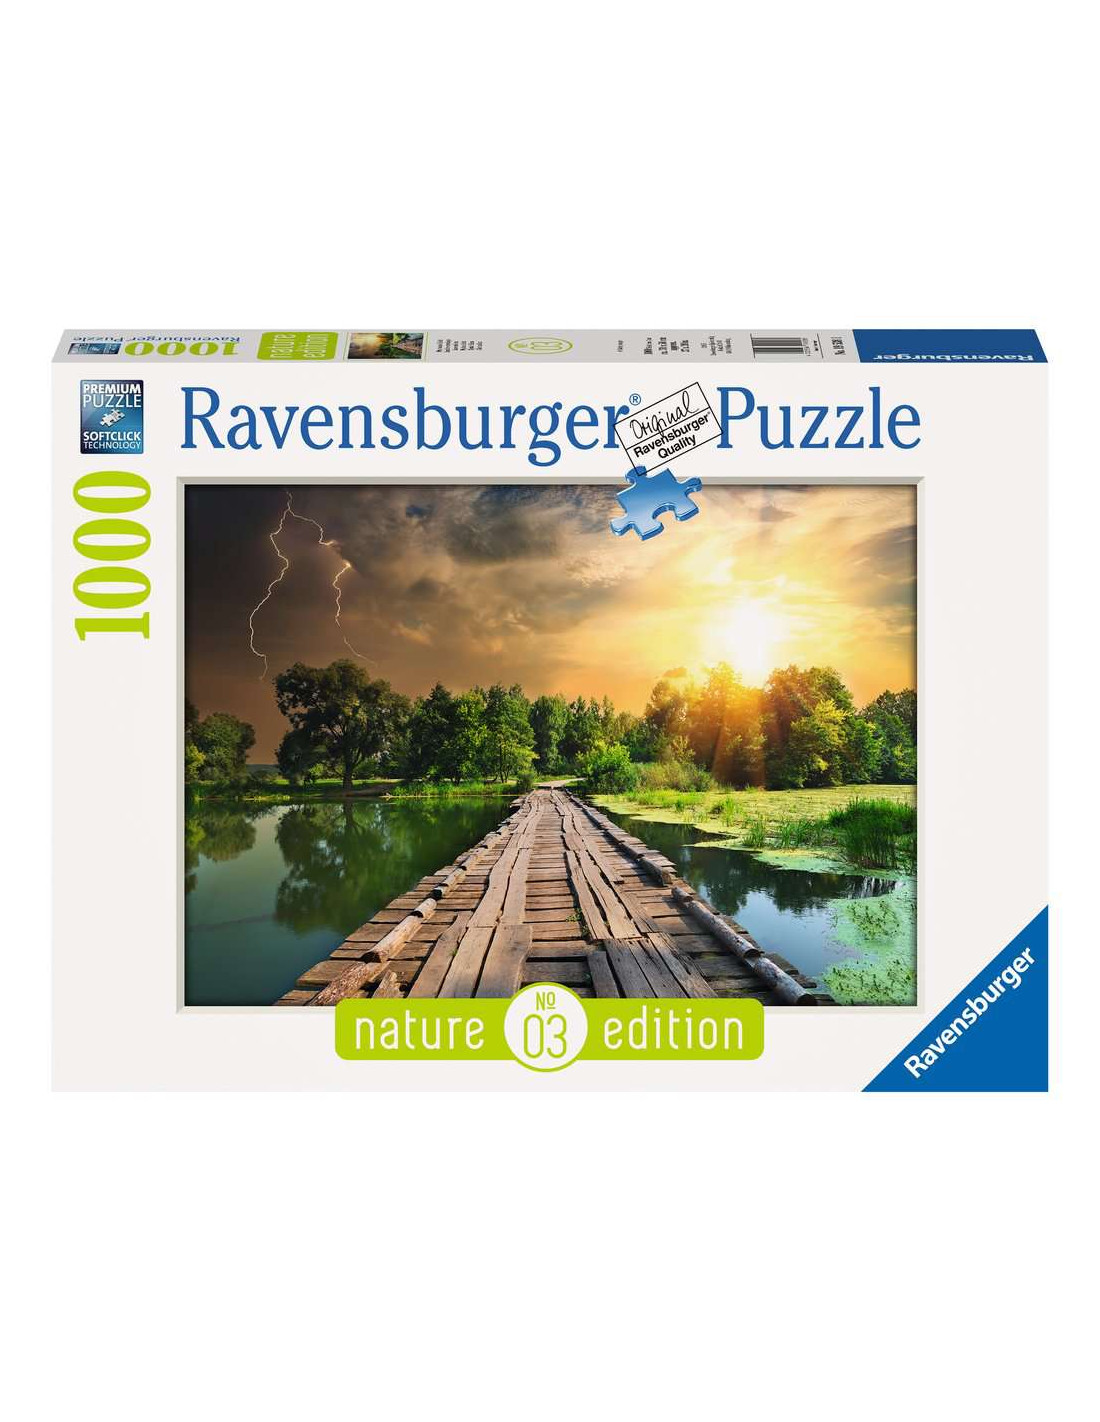 Puzzle Ravensburger Animaux sauvages de 1000 pièces 